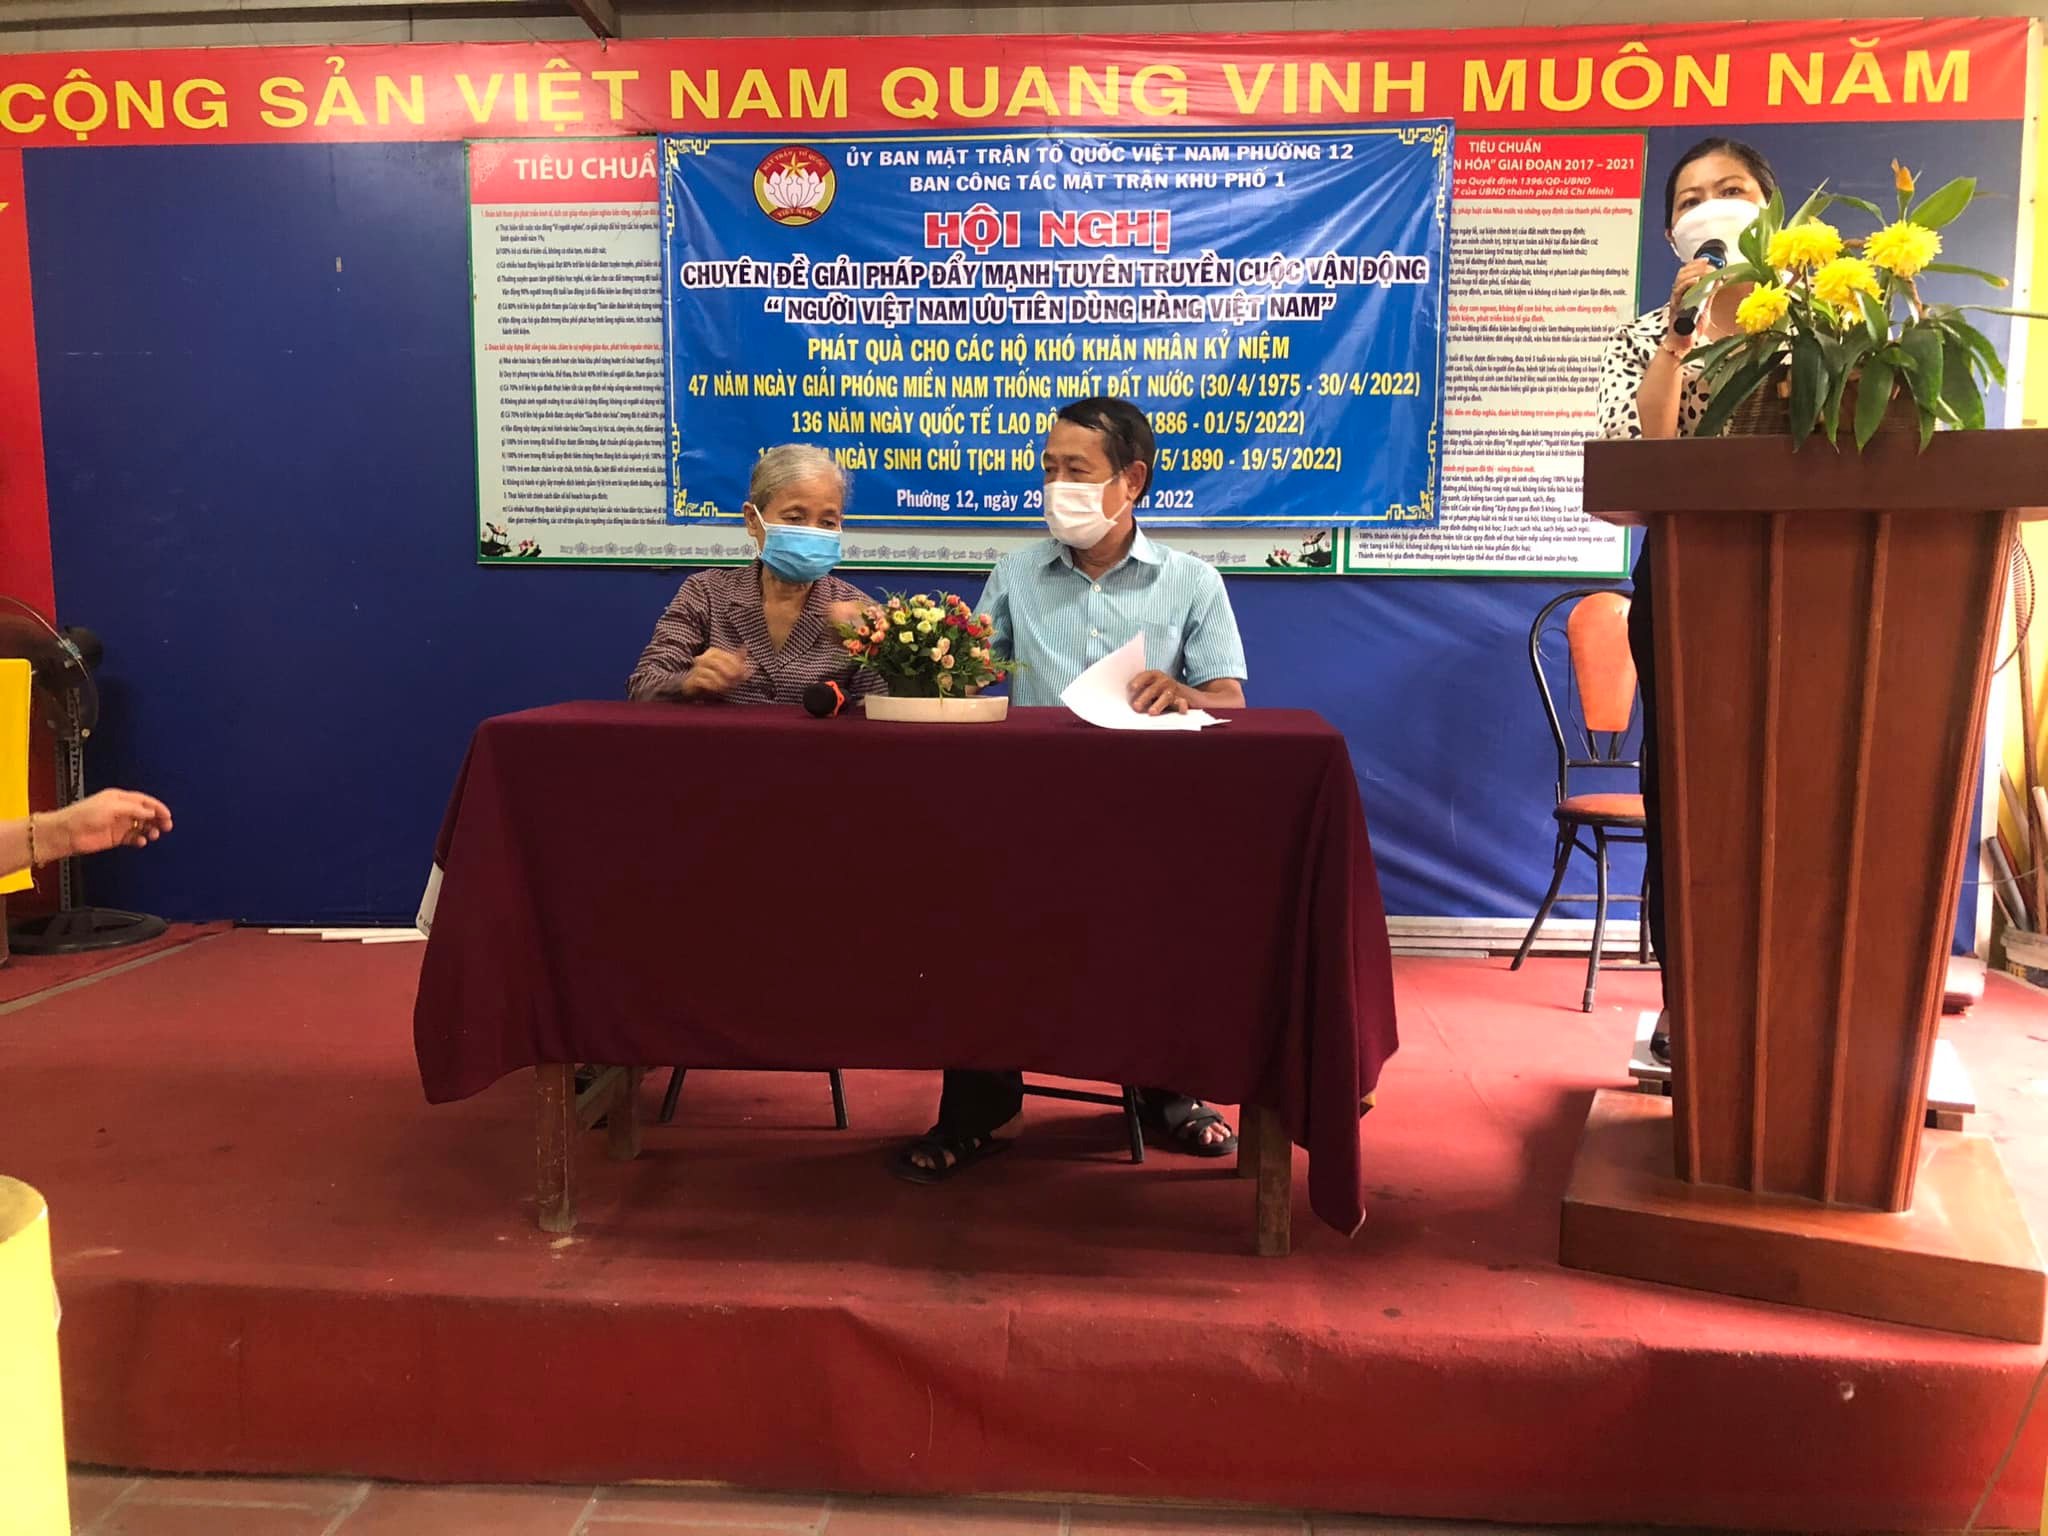 Khu phố 1 – Hội nghị chuyên đề giải pháp đẩy mạnh tuyên truyền cuộc vận động “Người Việt Nam ưu tiên dùng hàng Việt Nam”